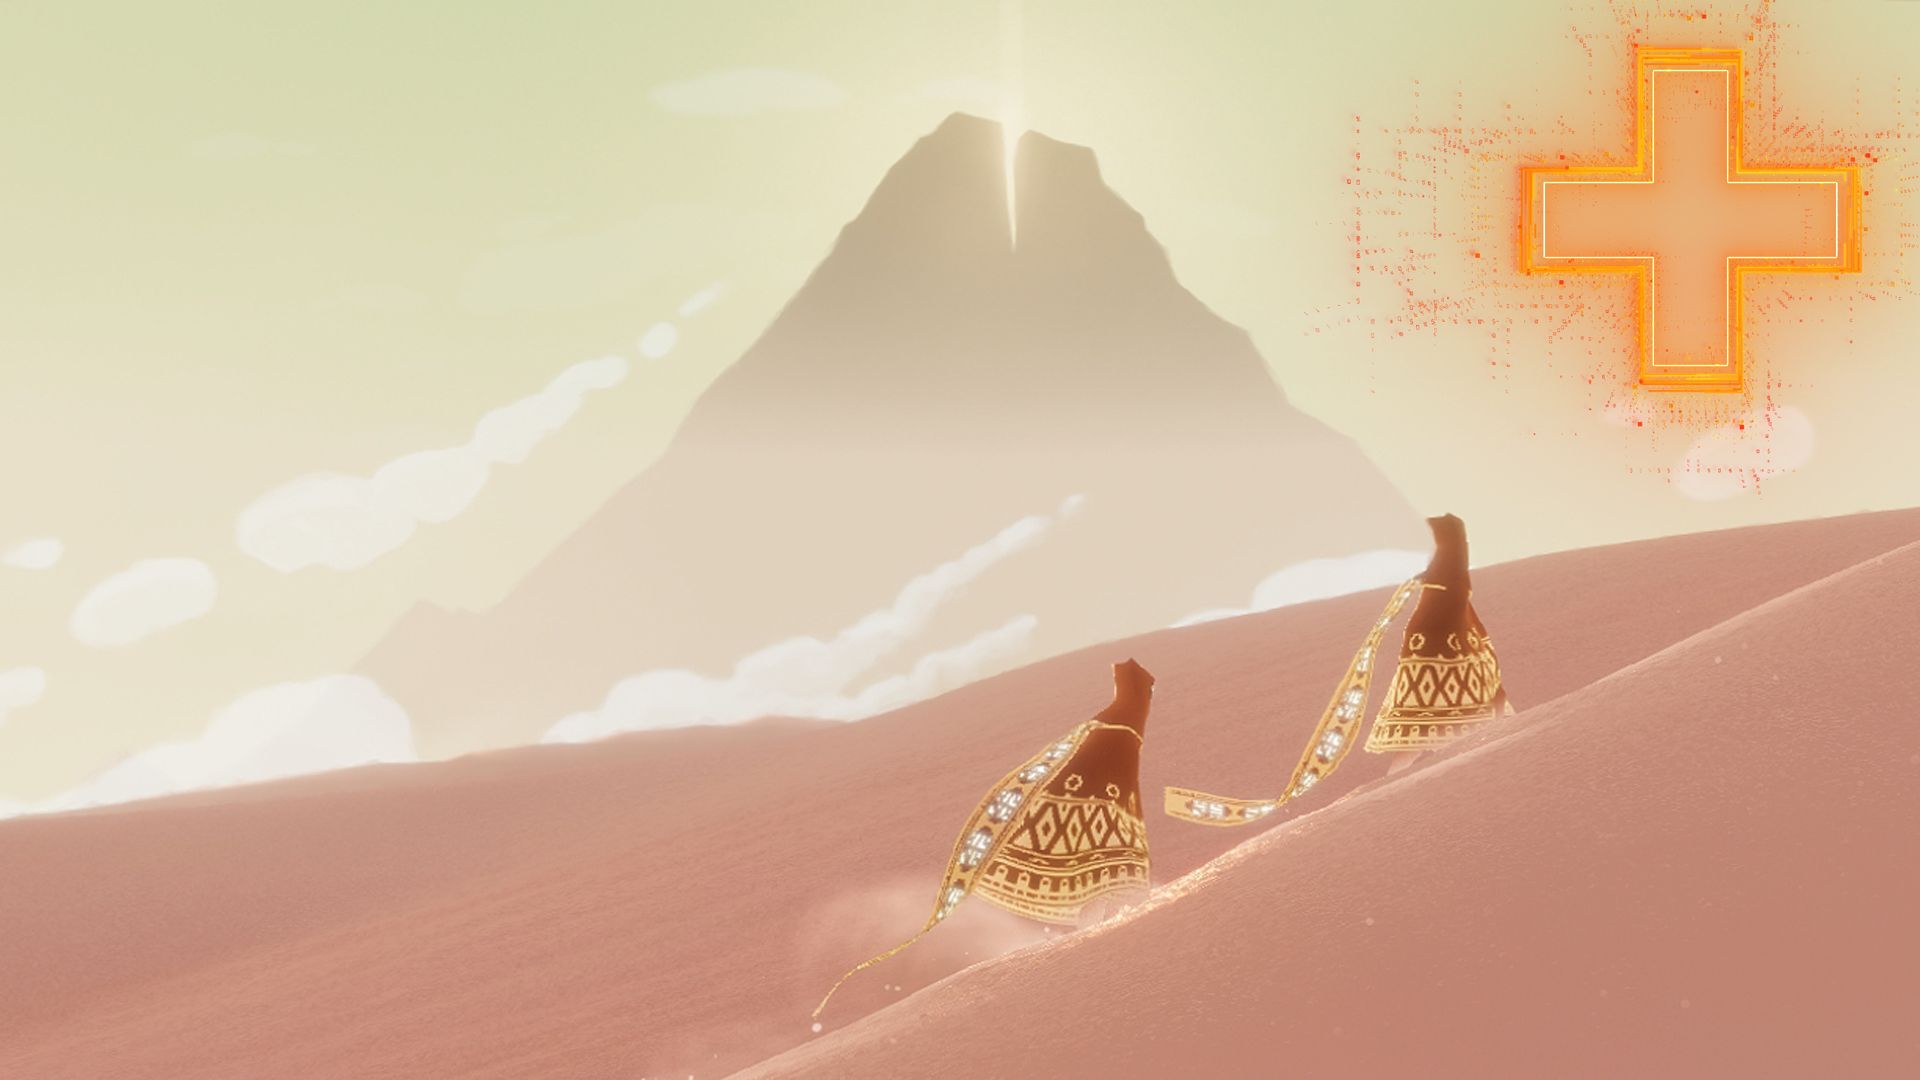 Takeis journey игра. Journey игра. Journey (игра, 2012). Journey пустыня ps4 Скриншоты thatgamecompany. Джорни путешествие игра.